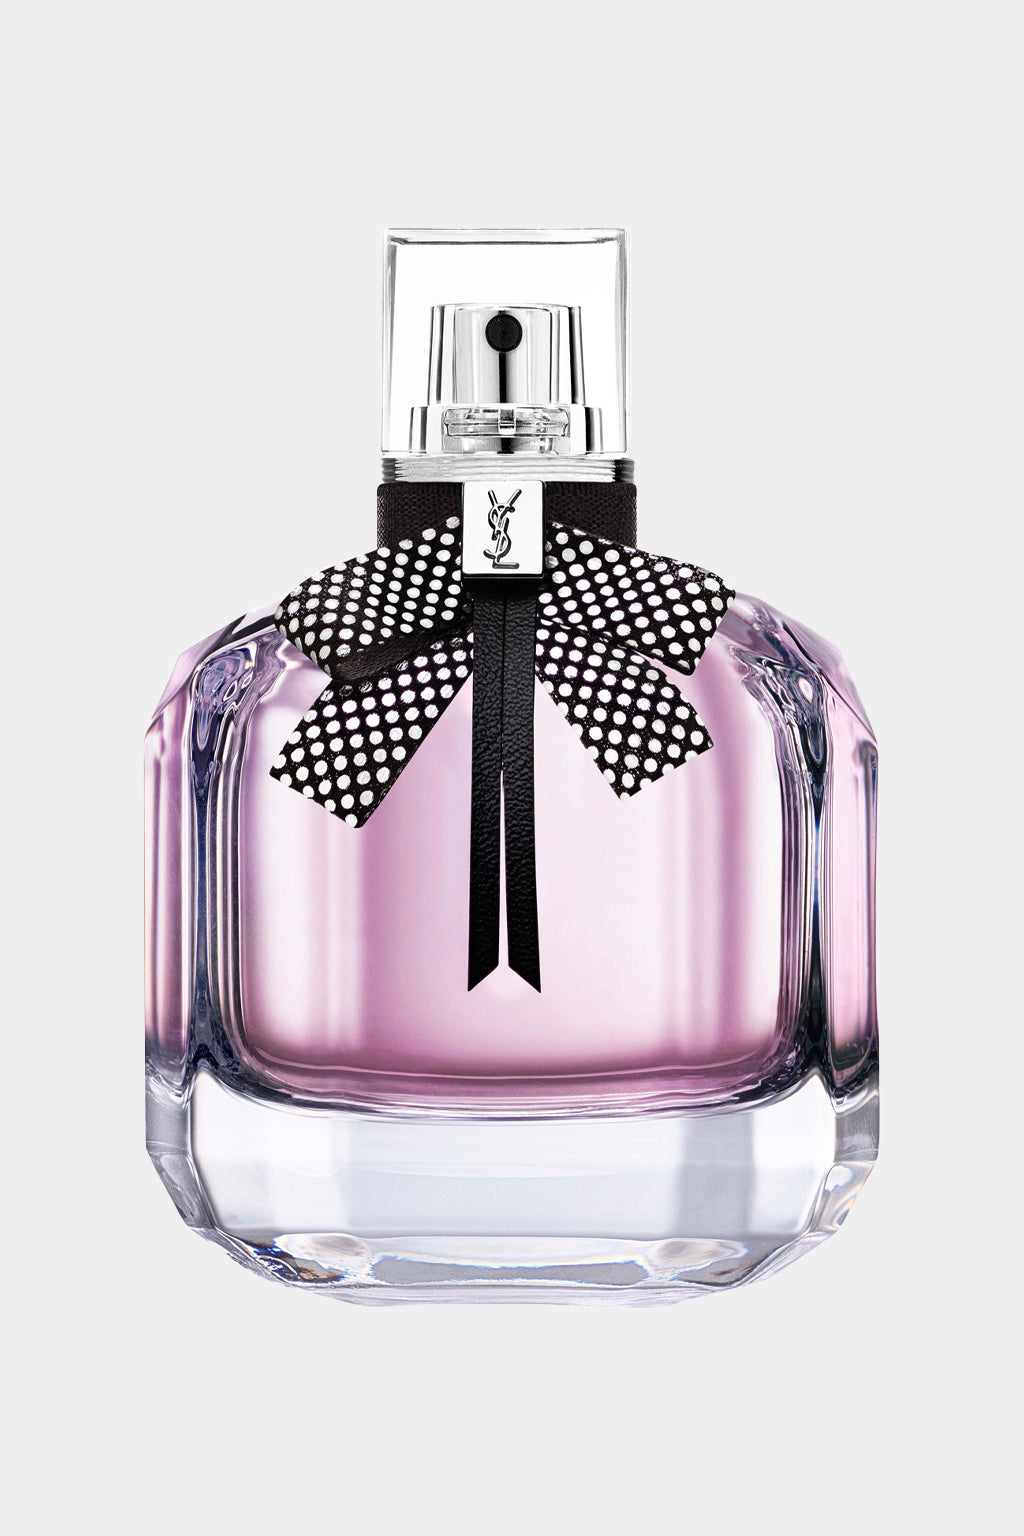 Yves Saint Laurent - Mon Paris Couture Eau de Parfum